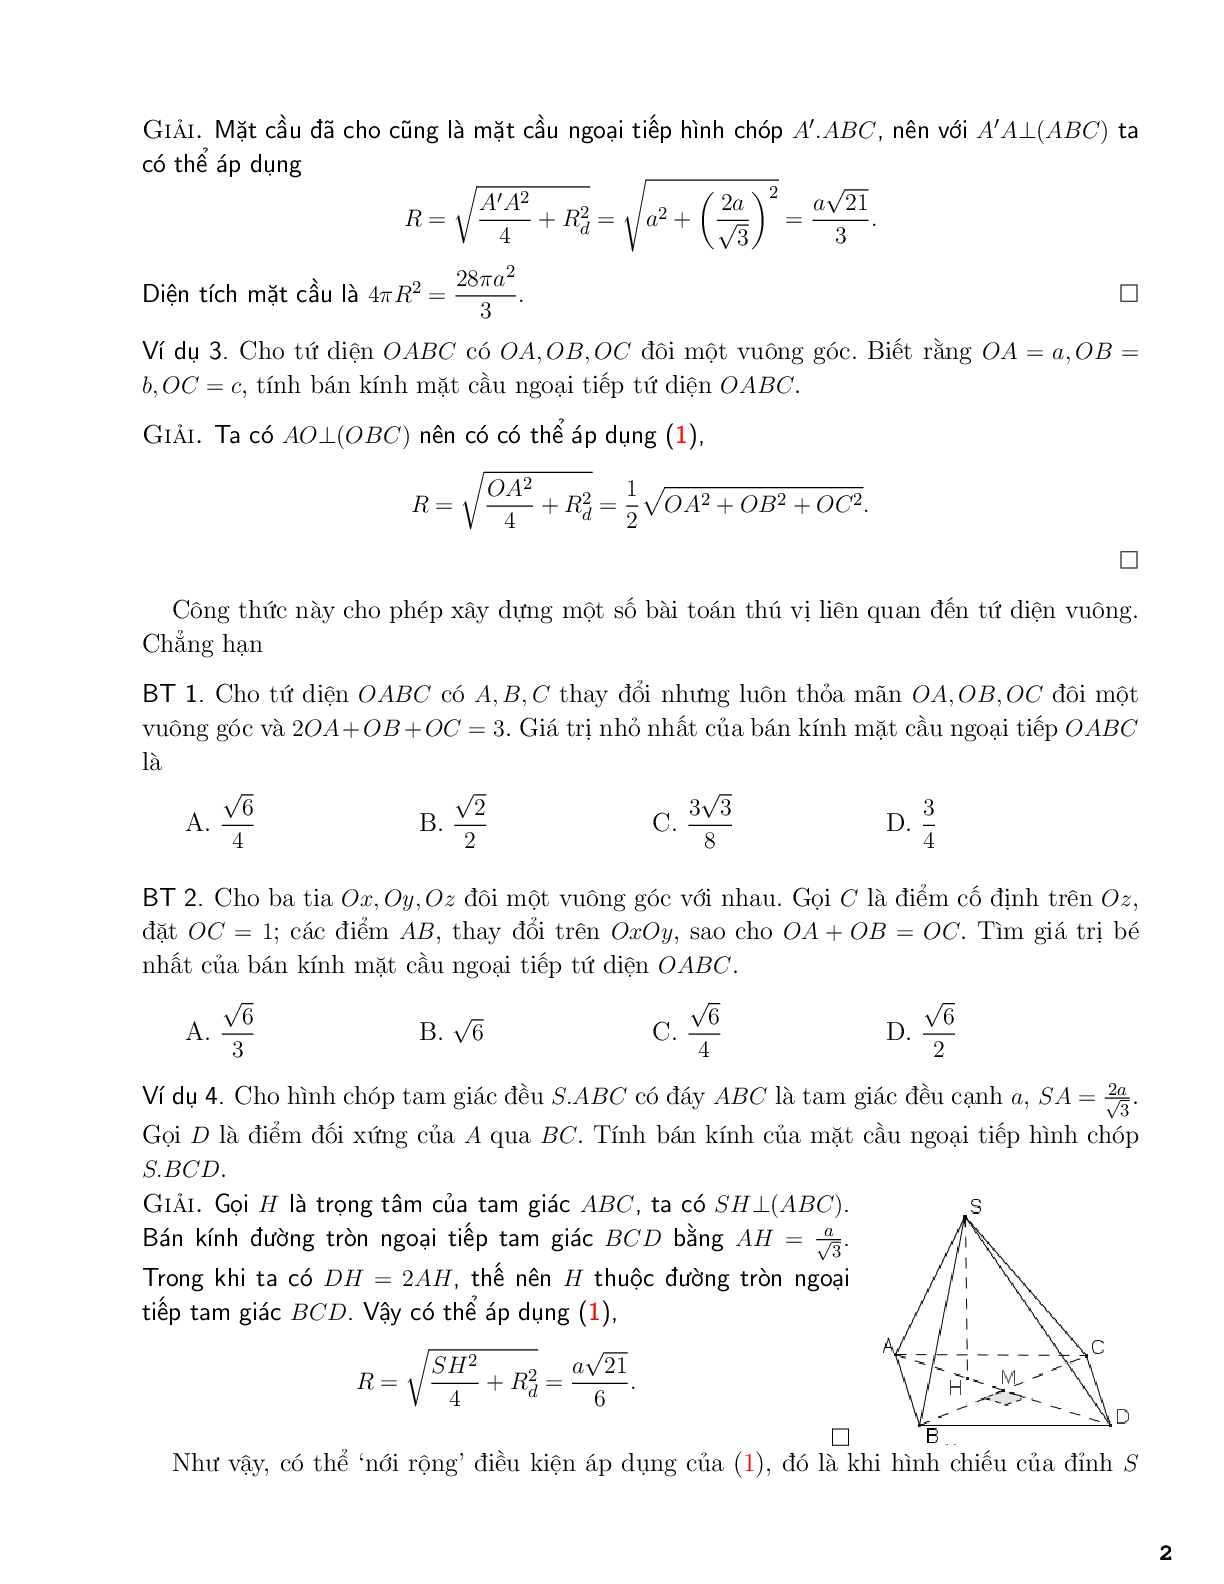 Một số công thức tính bán kính mặt cầu (trang 2)